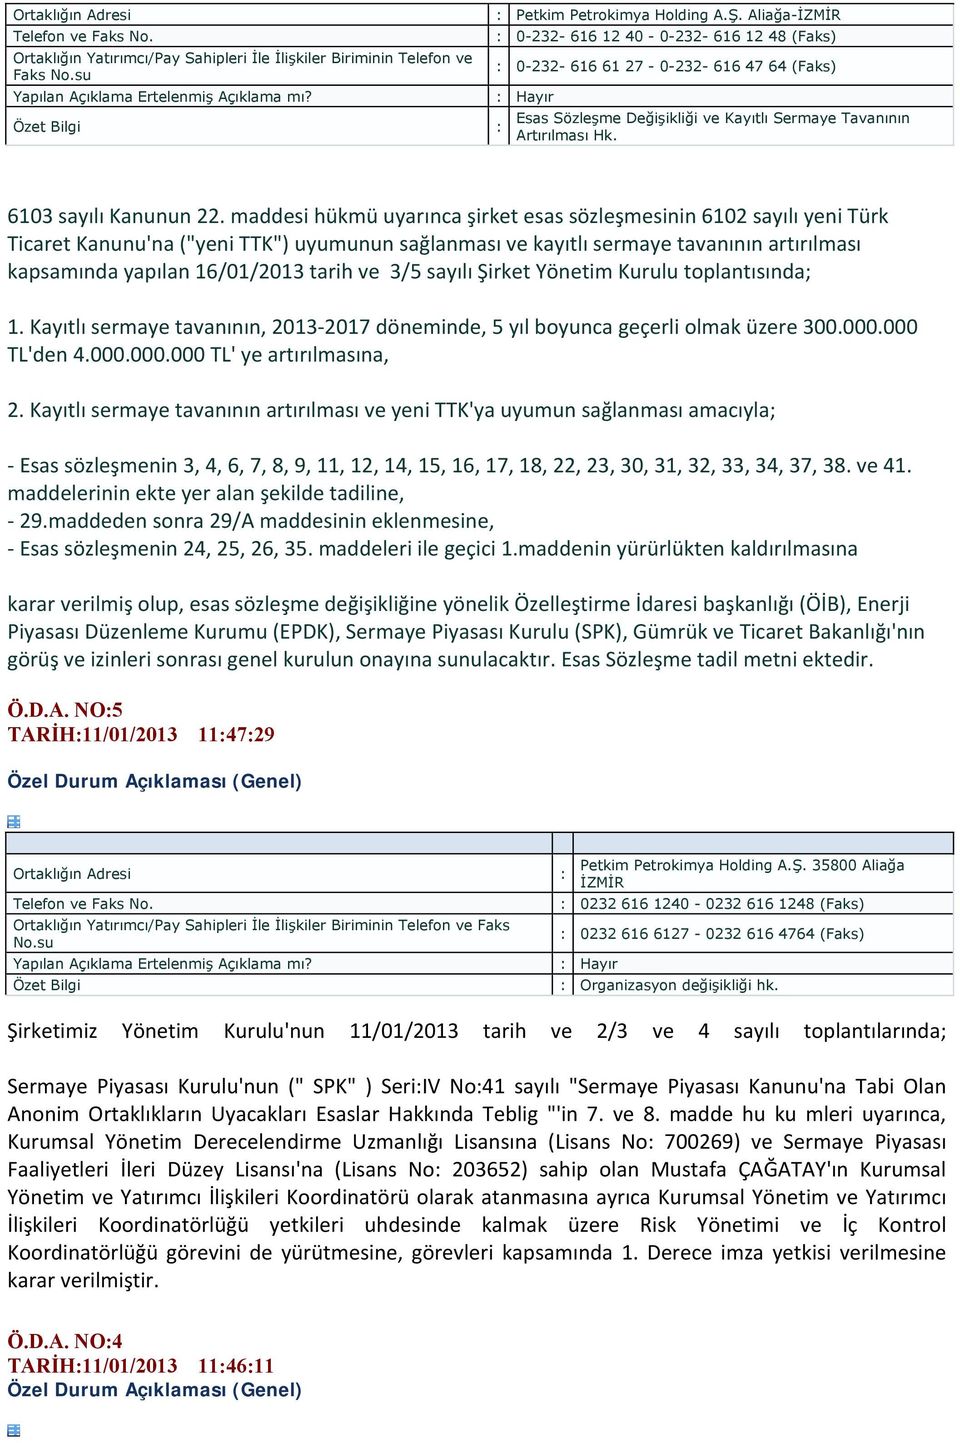 maddesi hükmü uyarınca şirket esas sözleşmesinin 6102 sayılı yeni Türk Ticaret Kanunu'na ("yeni TTK") uyumunun sağlanması ve kayıtlı sermaye tavanının artırılması kapsamında yapılan 16/01/2013 tarih